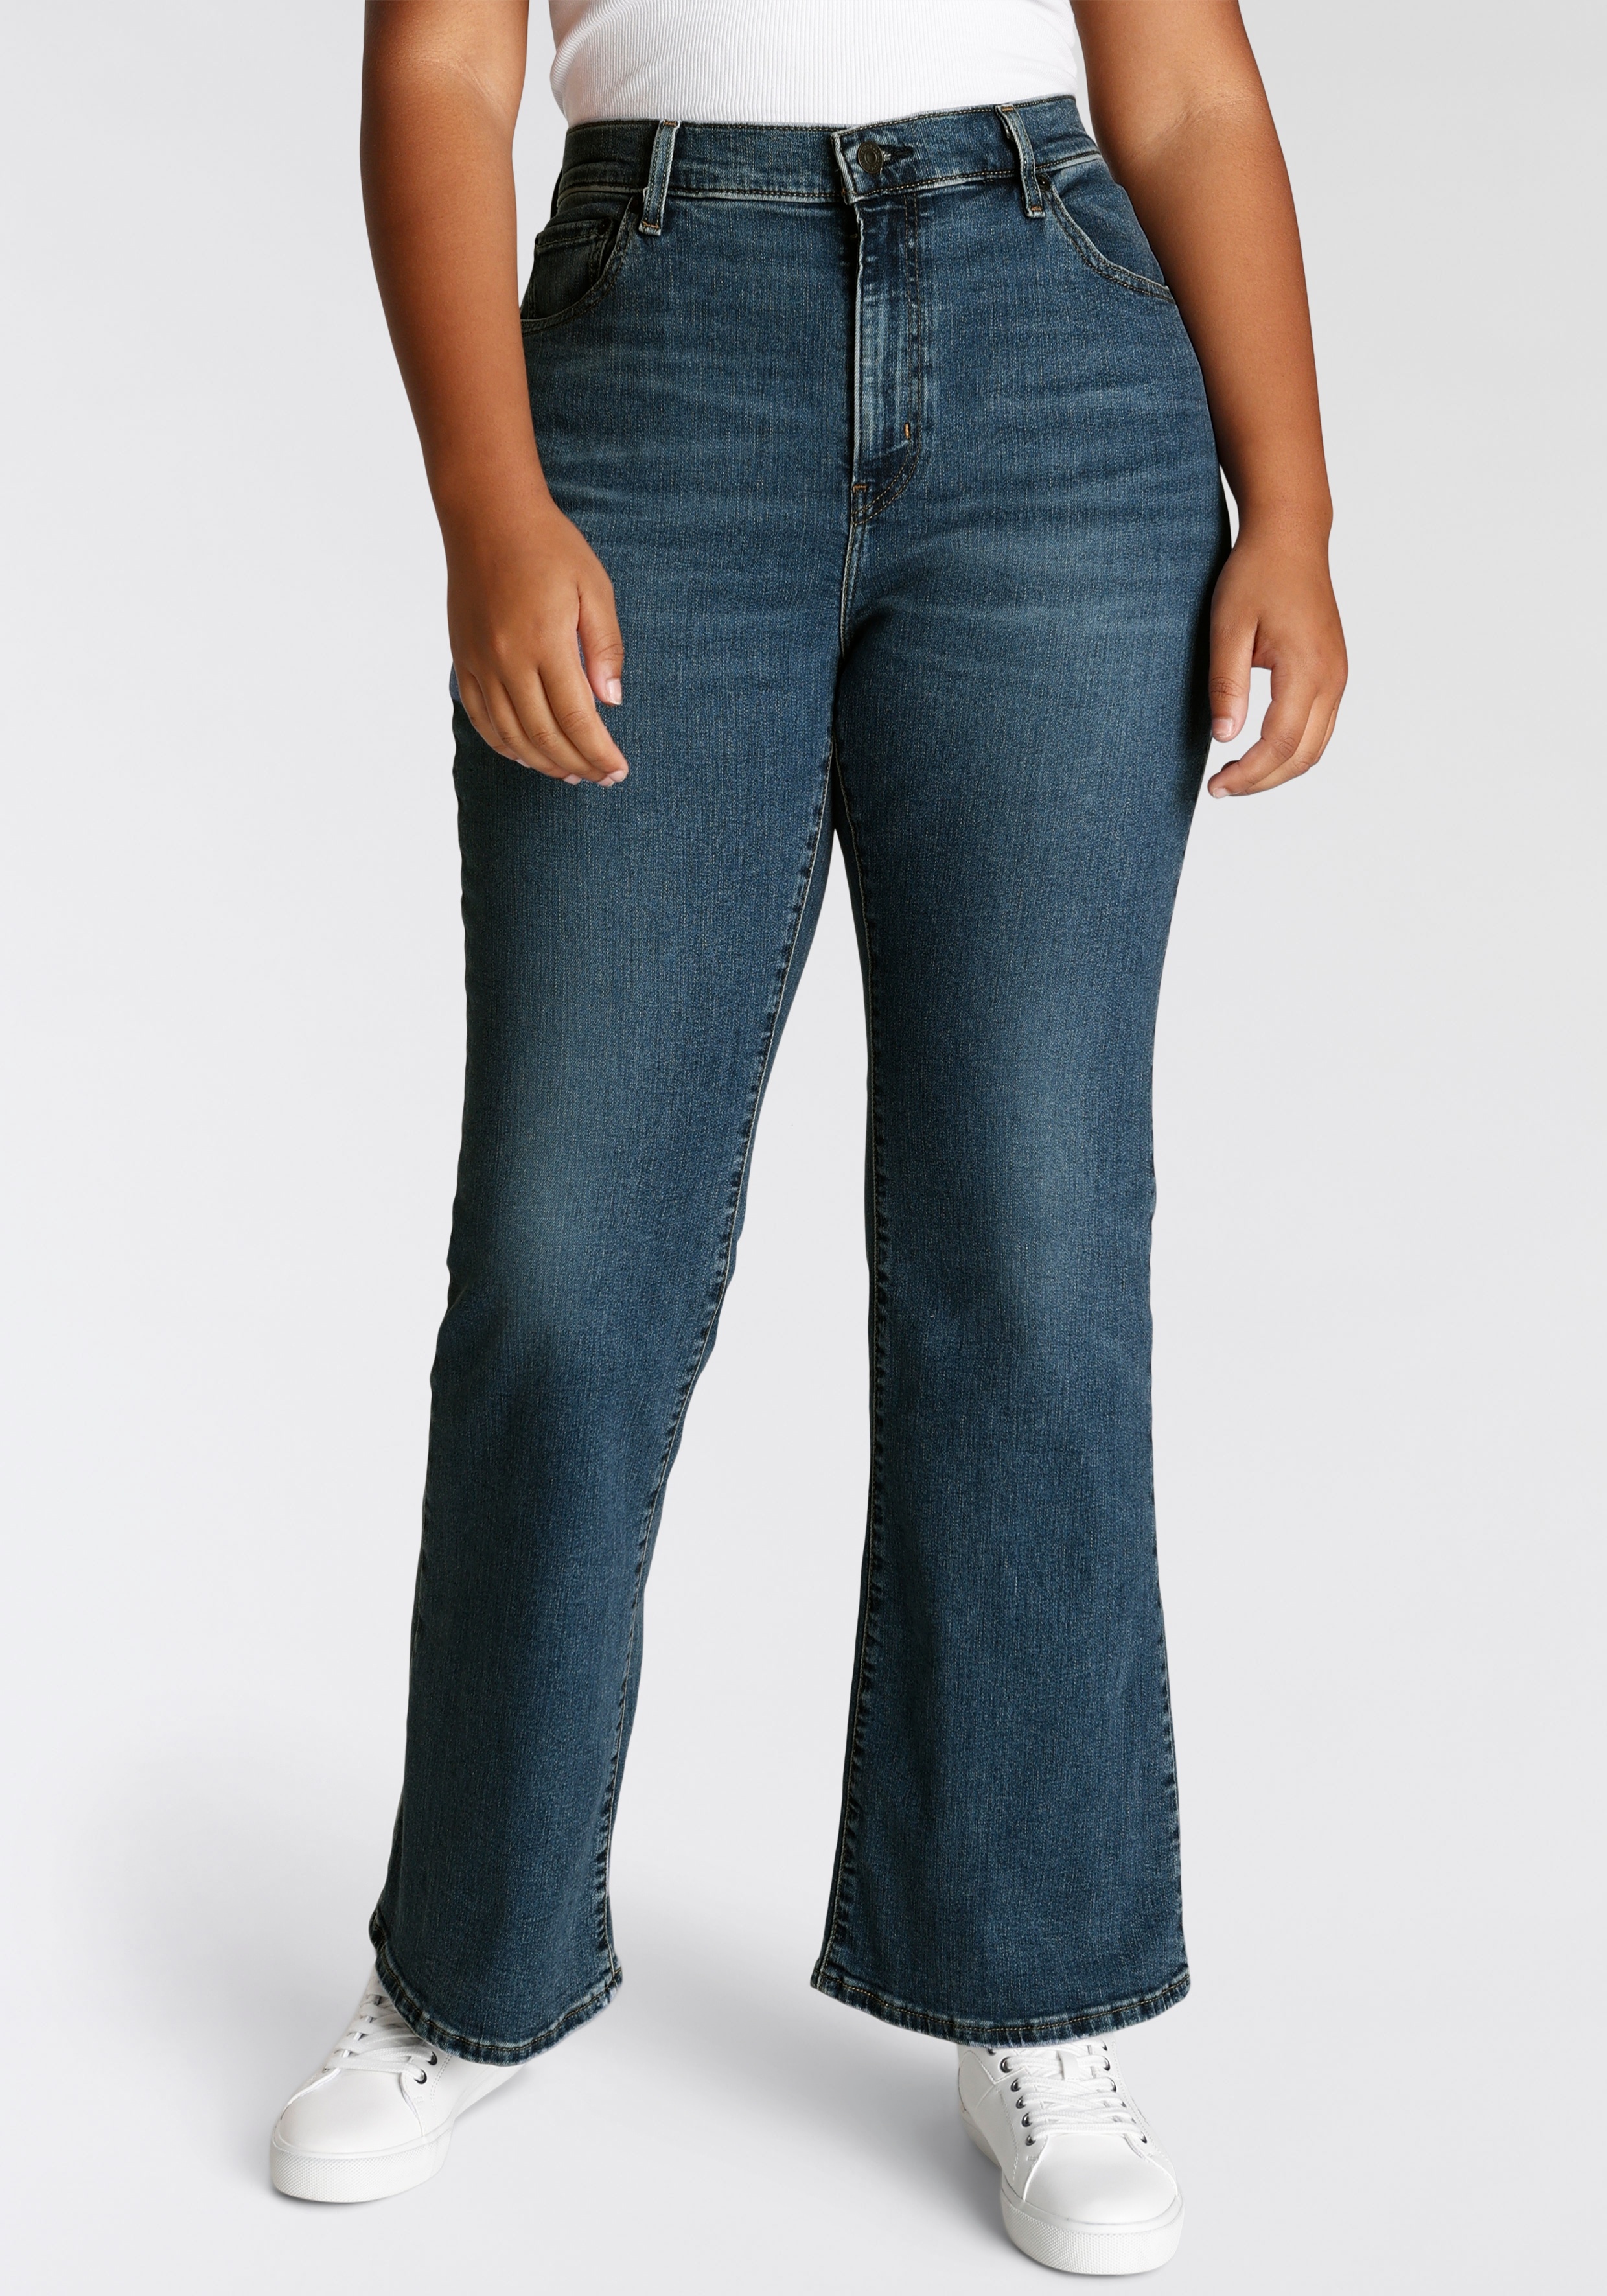 Bootcut-Jeans LEVI'S PLUS "726 PL HR FLARE" Gr. 16 (46), Länge 34, blau (blue wave mid) Damen Jeans Bootcut